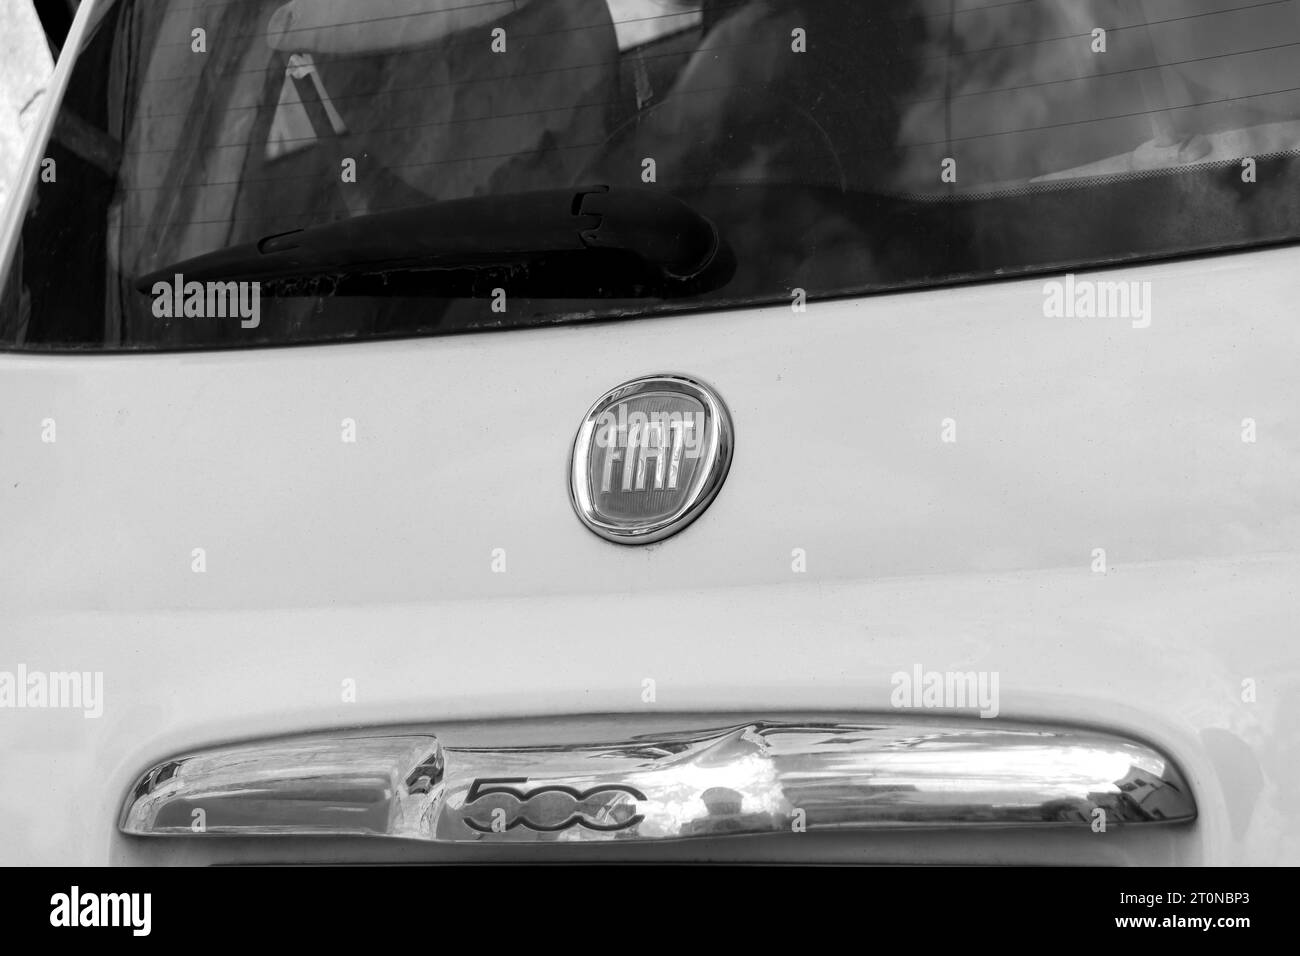 Fiat Automobiles, un'icona con il logo del costruttore automobilistico italiano sul retro di una Fiat 500 City car bianca Foto Stock